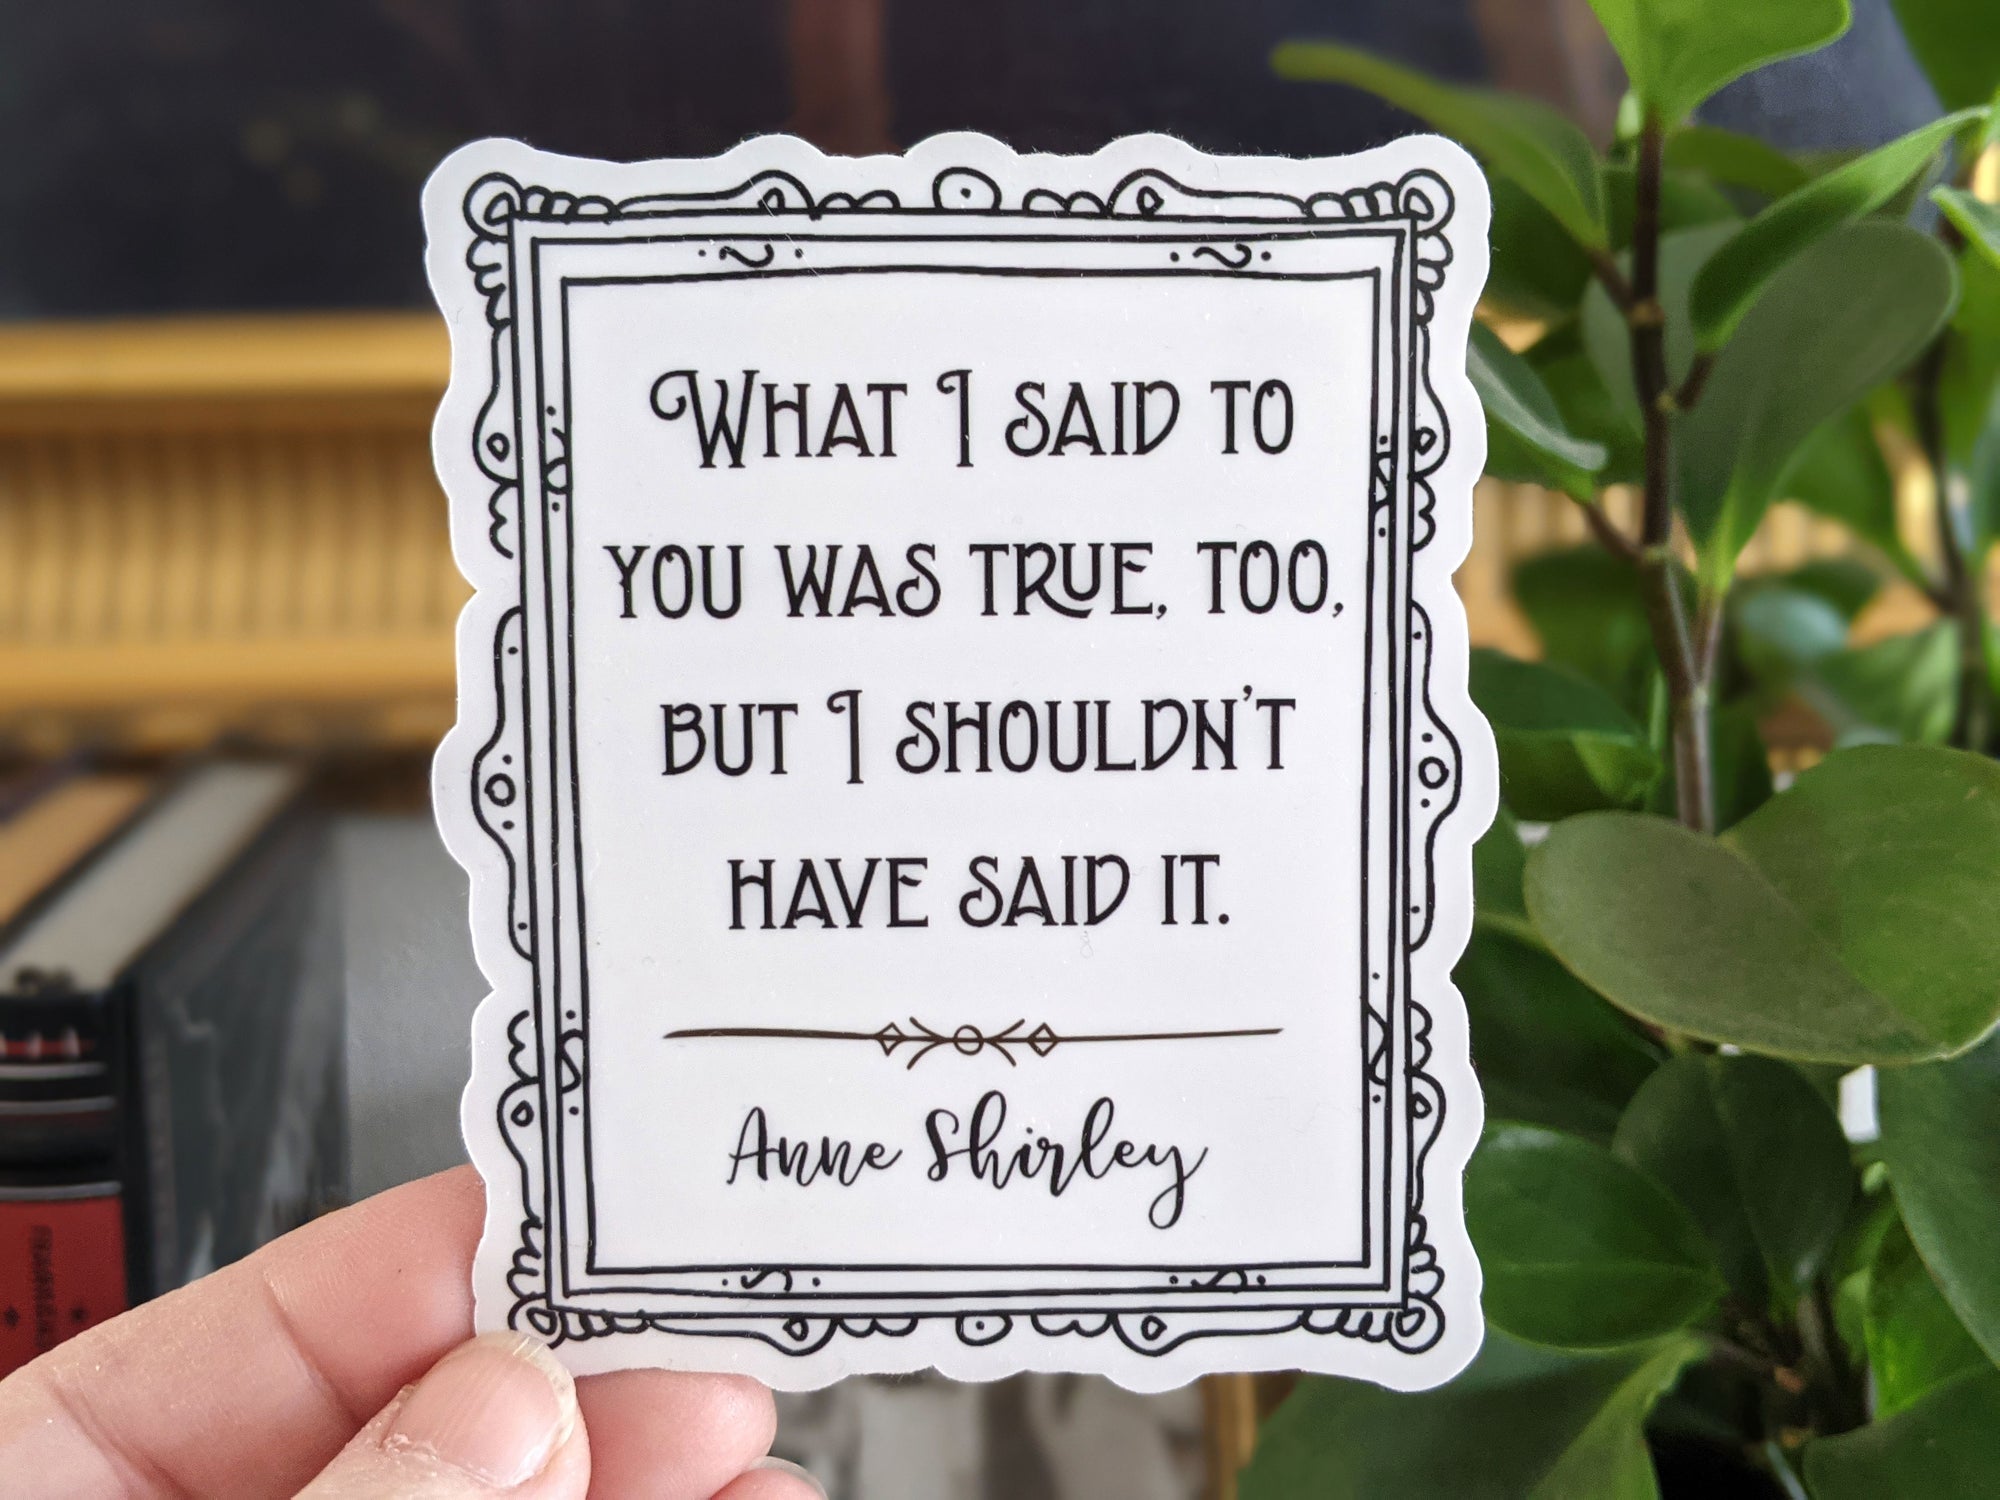 Anne's Apology Sticker